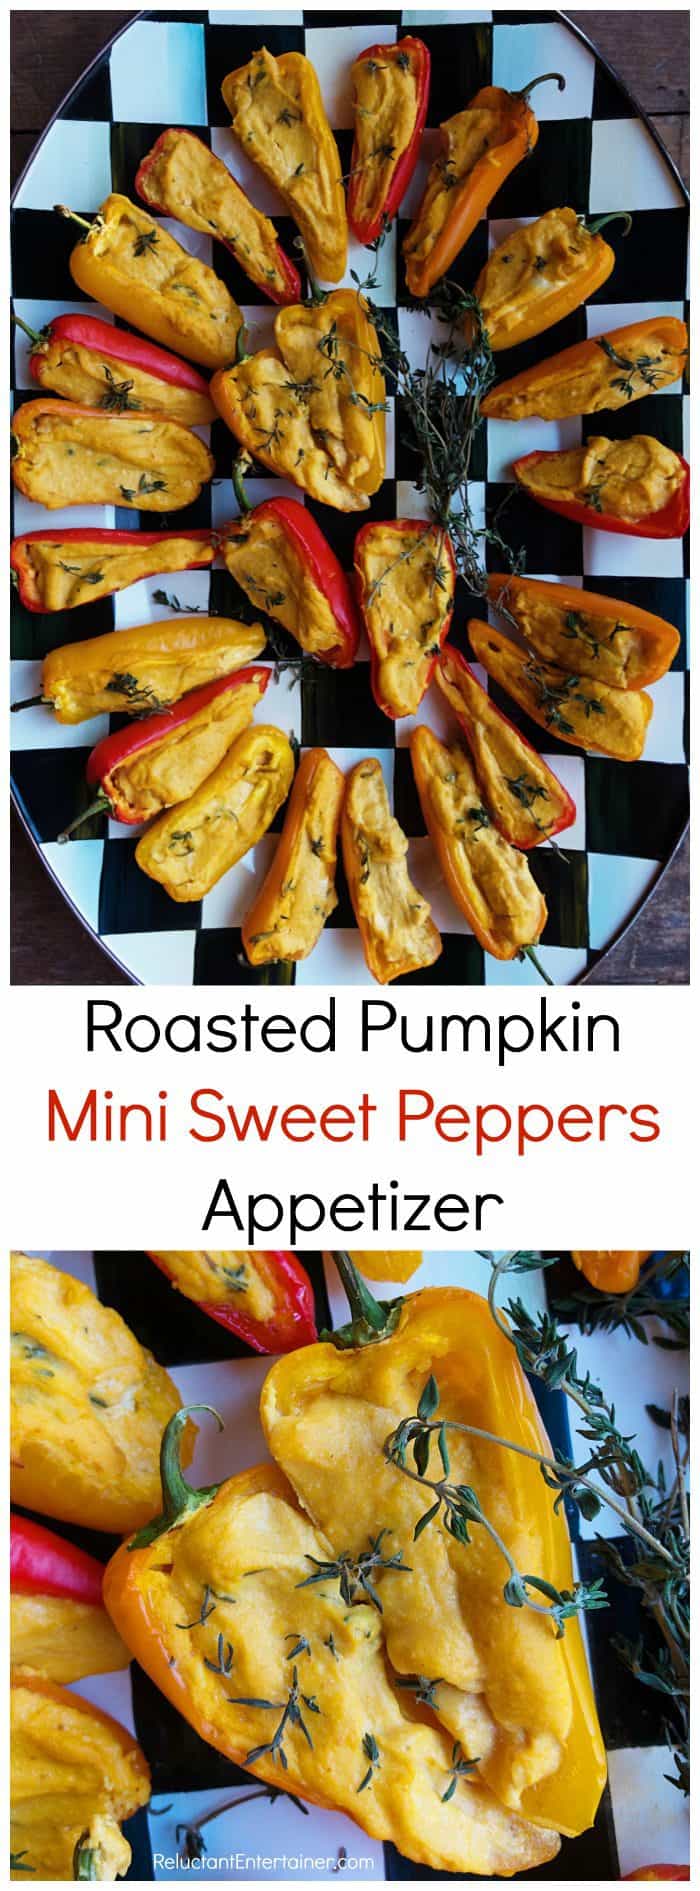 Roasted Pumpkin Mini Sweet Peppers Appetizer